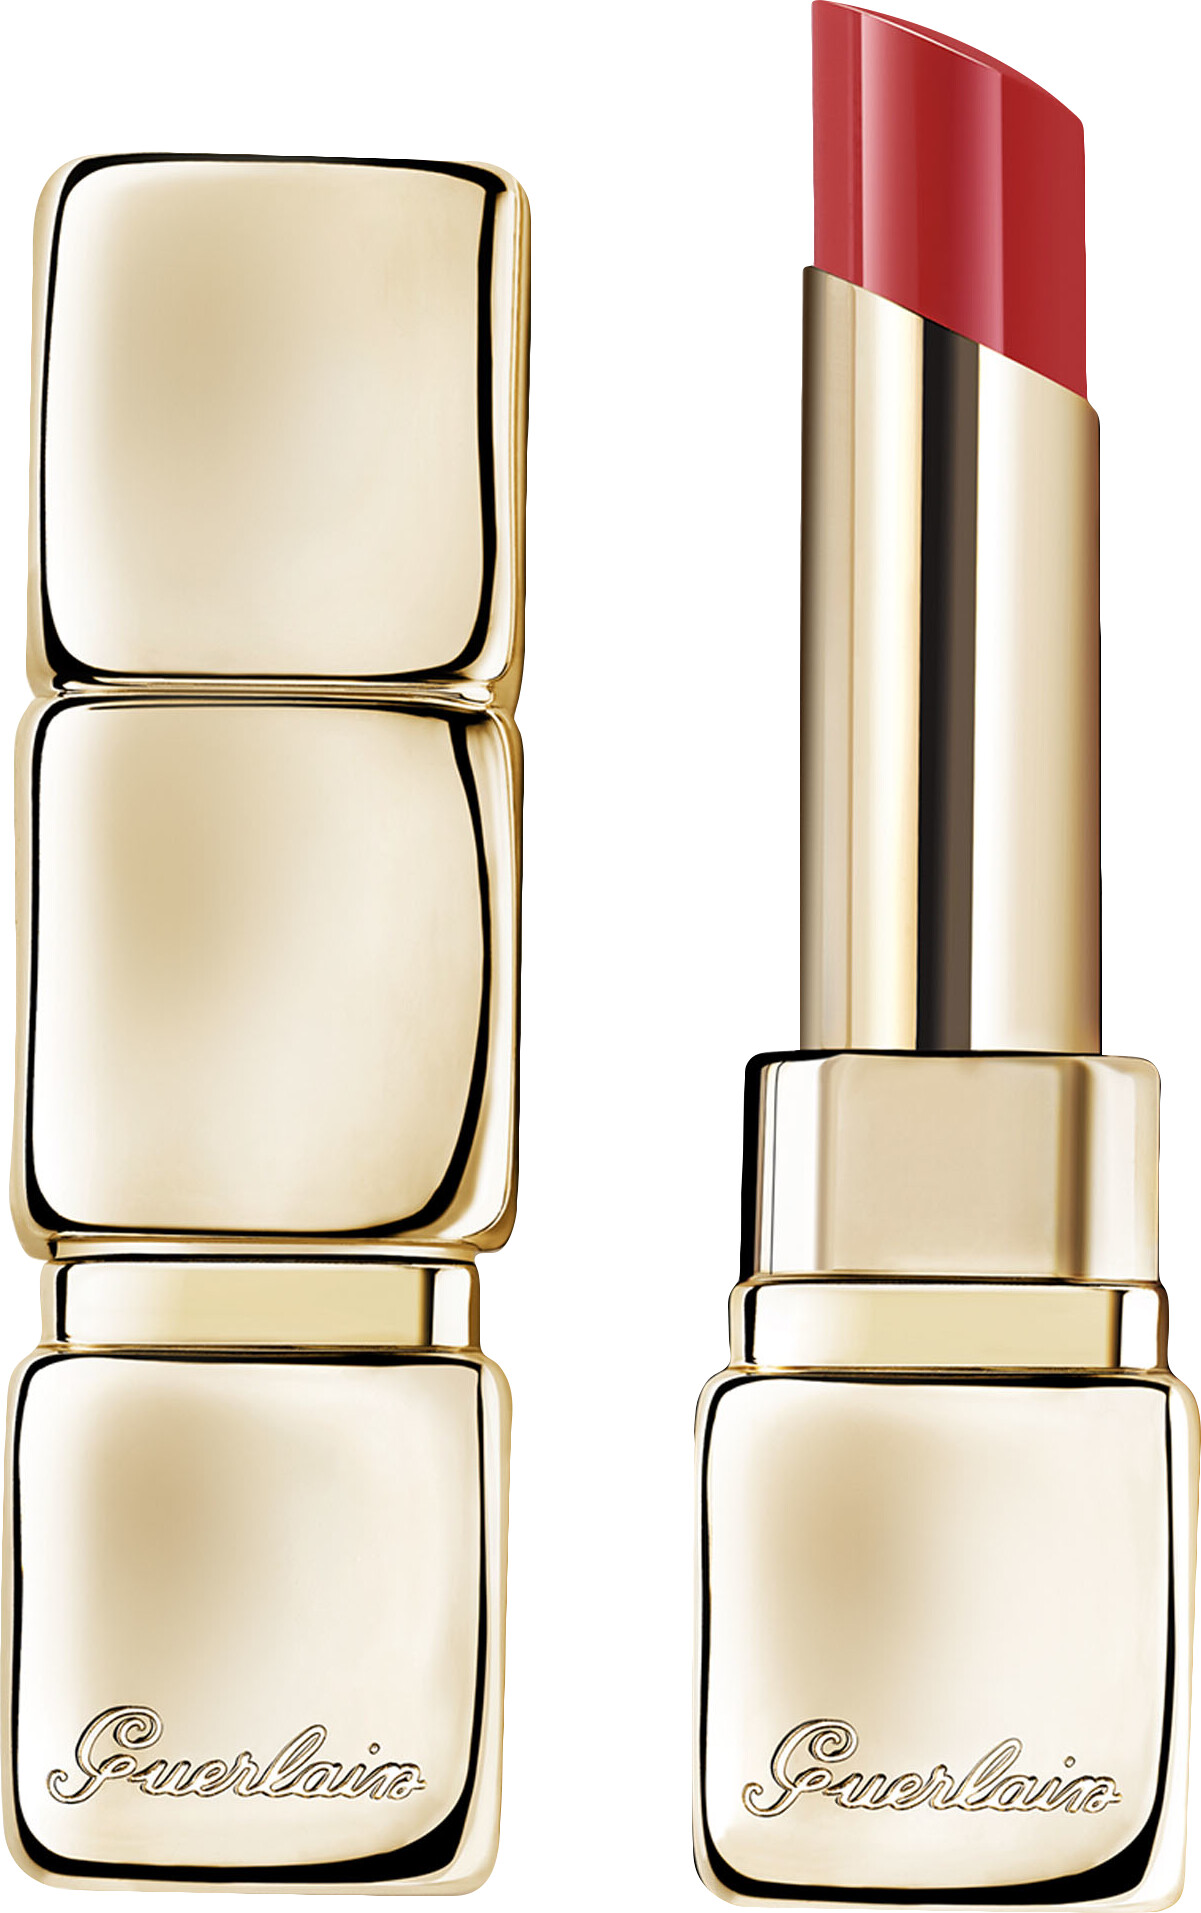 GUERLAIN KissKiss Shine Bloom Lipstick 3.2g 409 - Fuchsia Flush